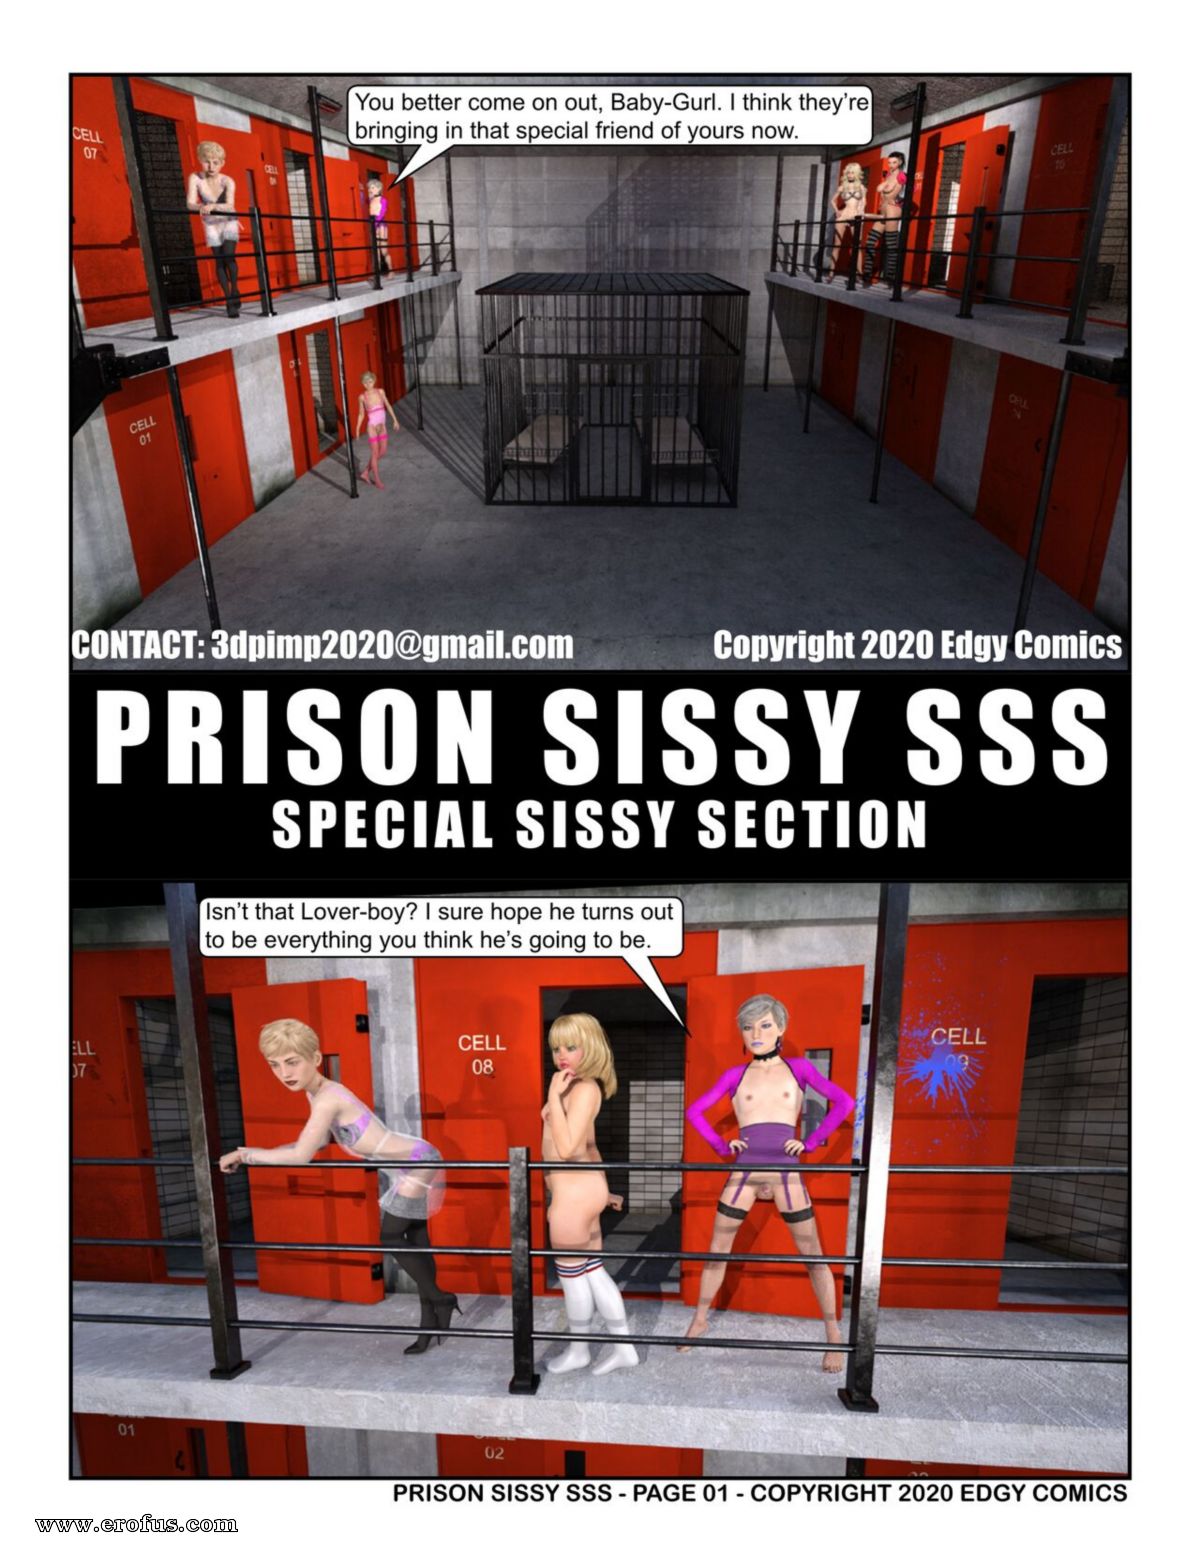 Big cock prison comic gay porn